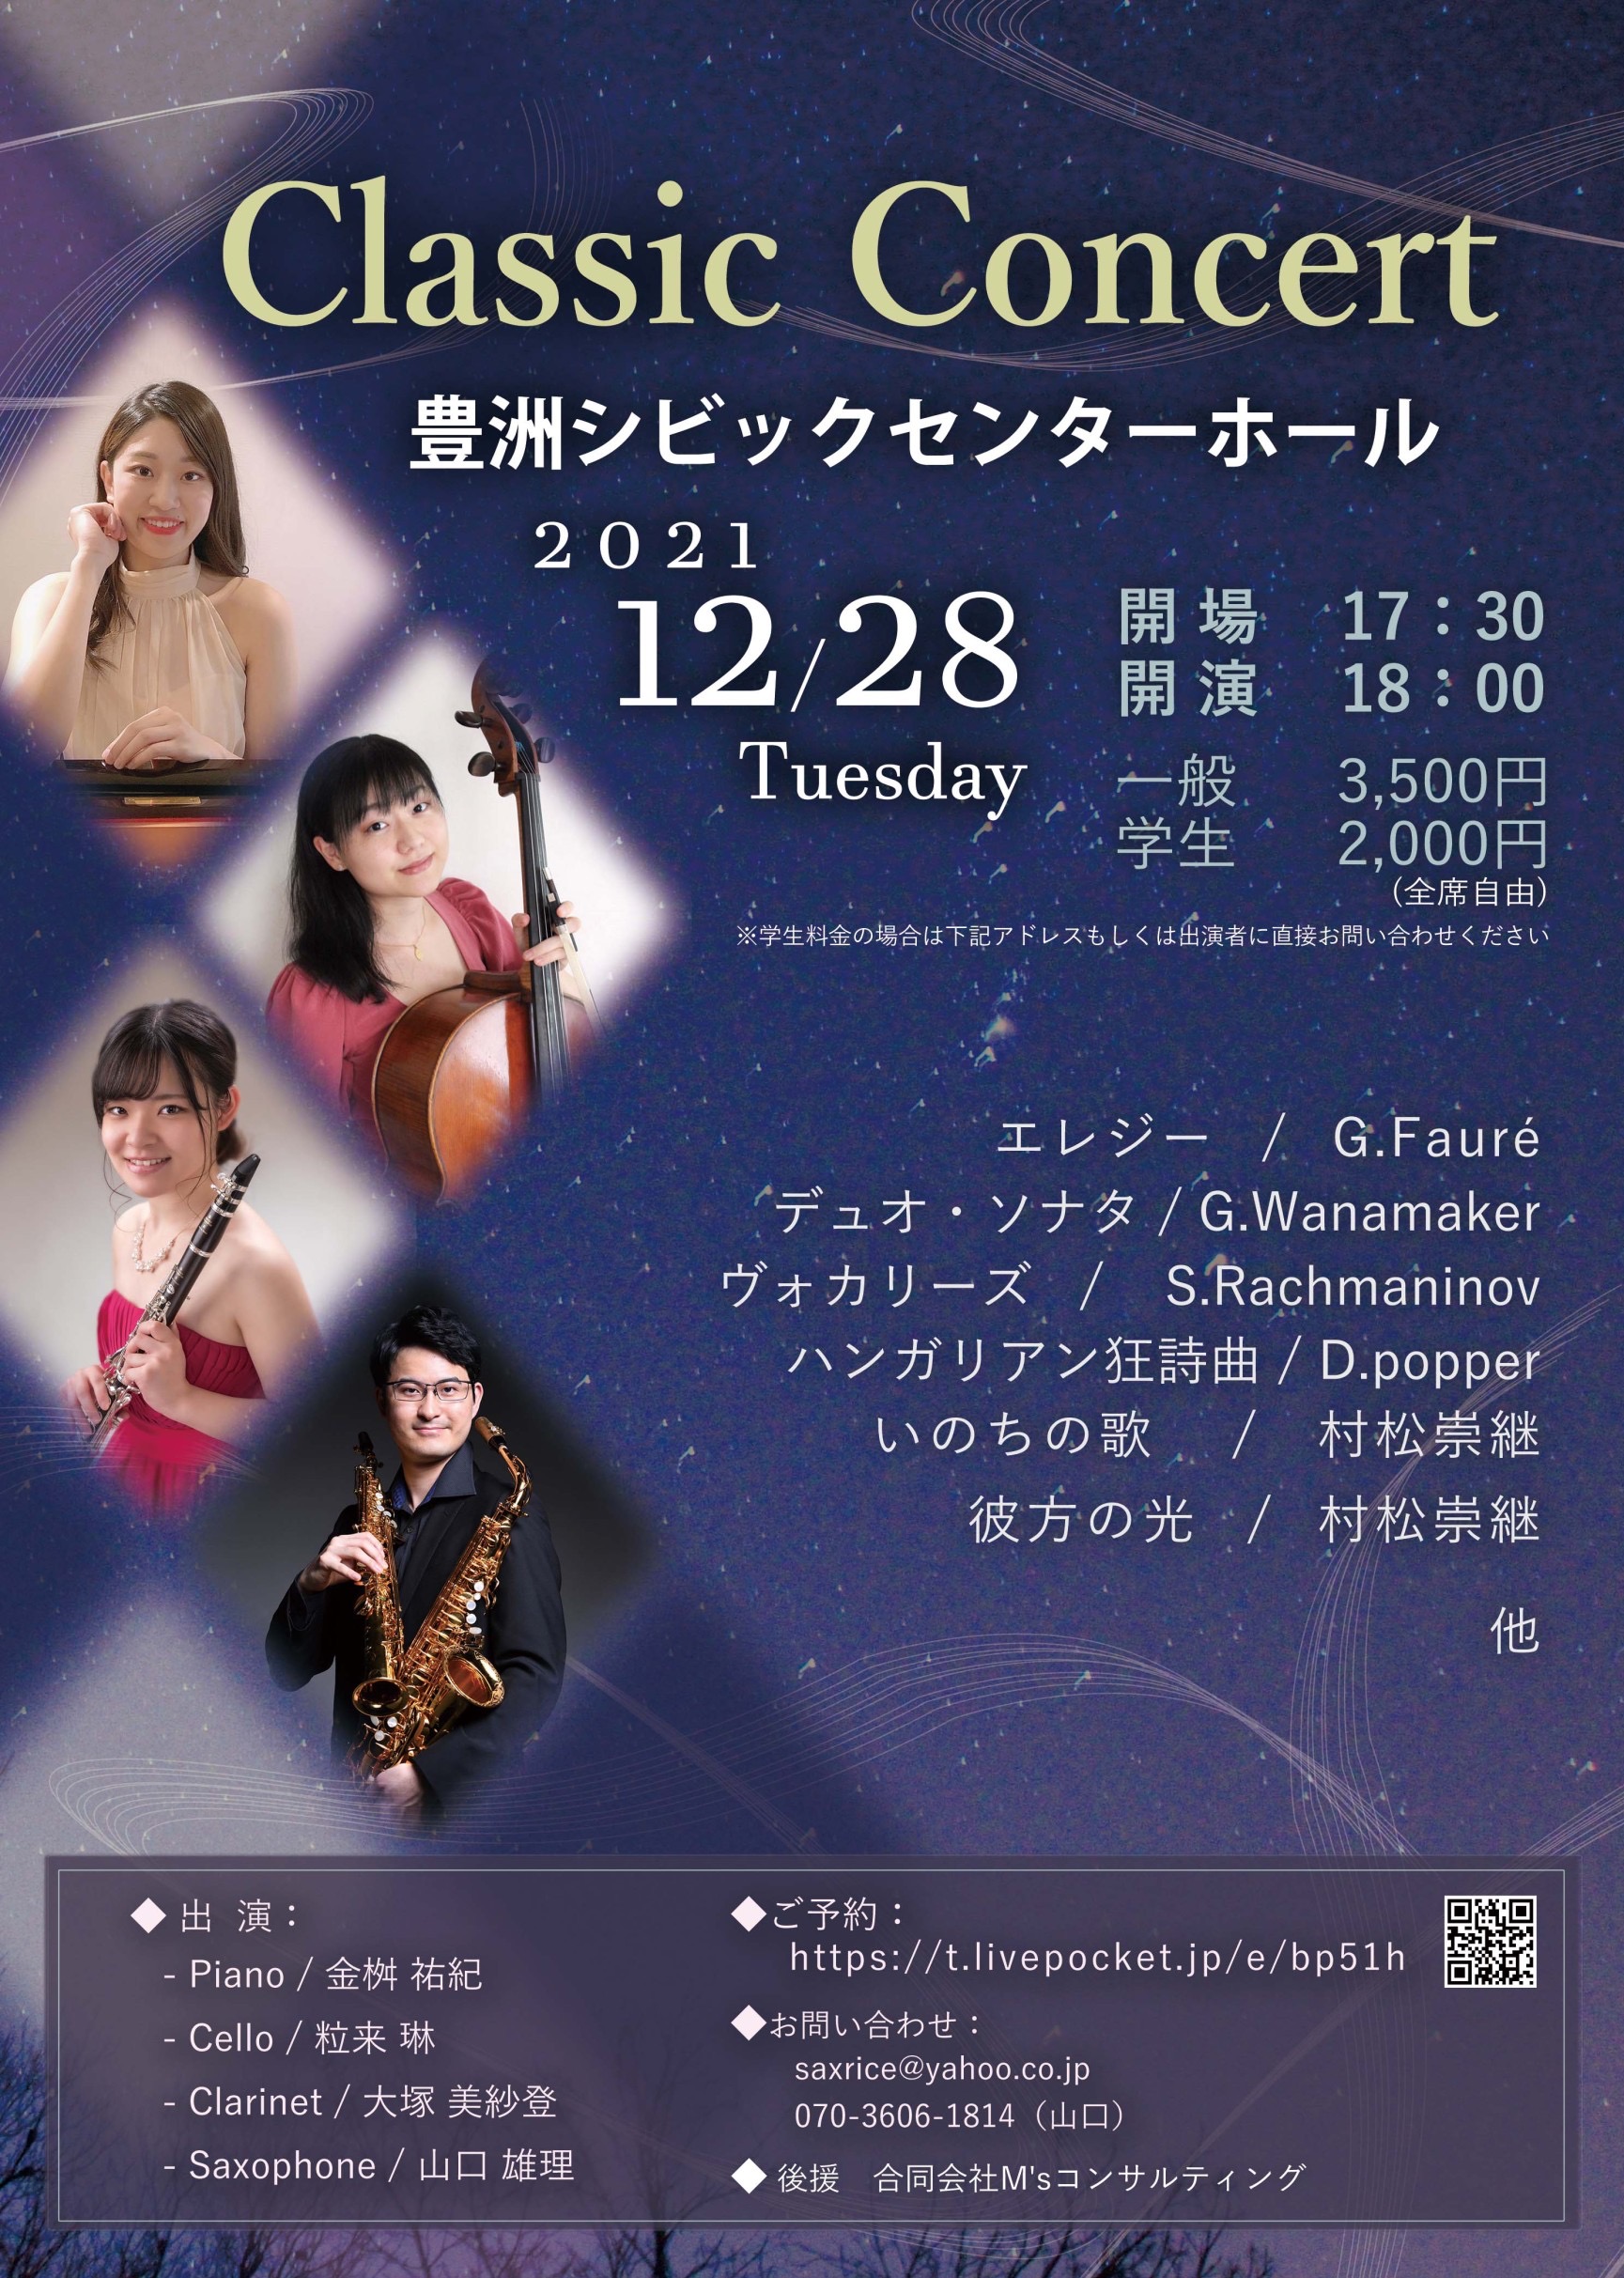 2021年12月28日(火) Classic concert 〜ピアノ四重奏による〜